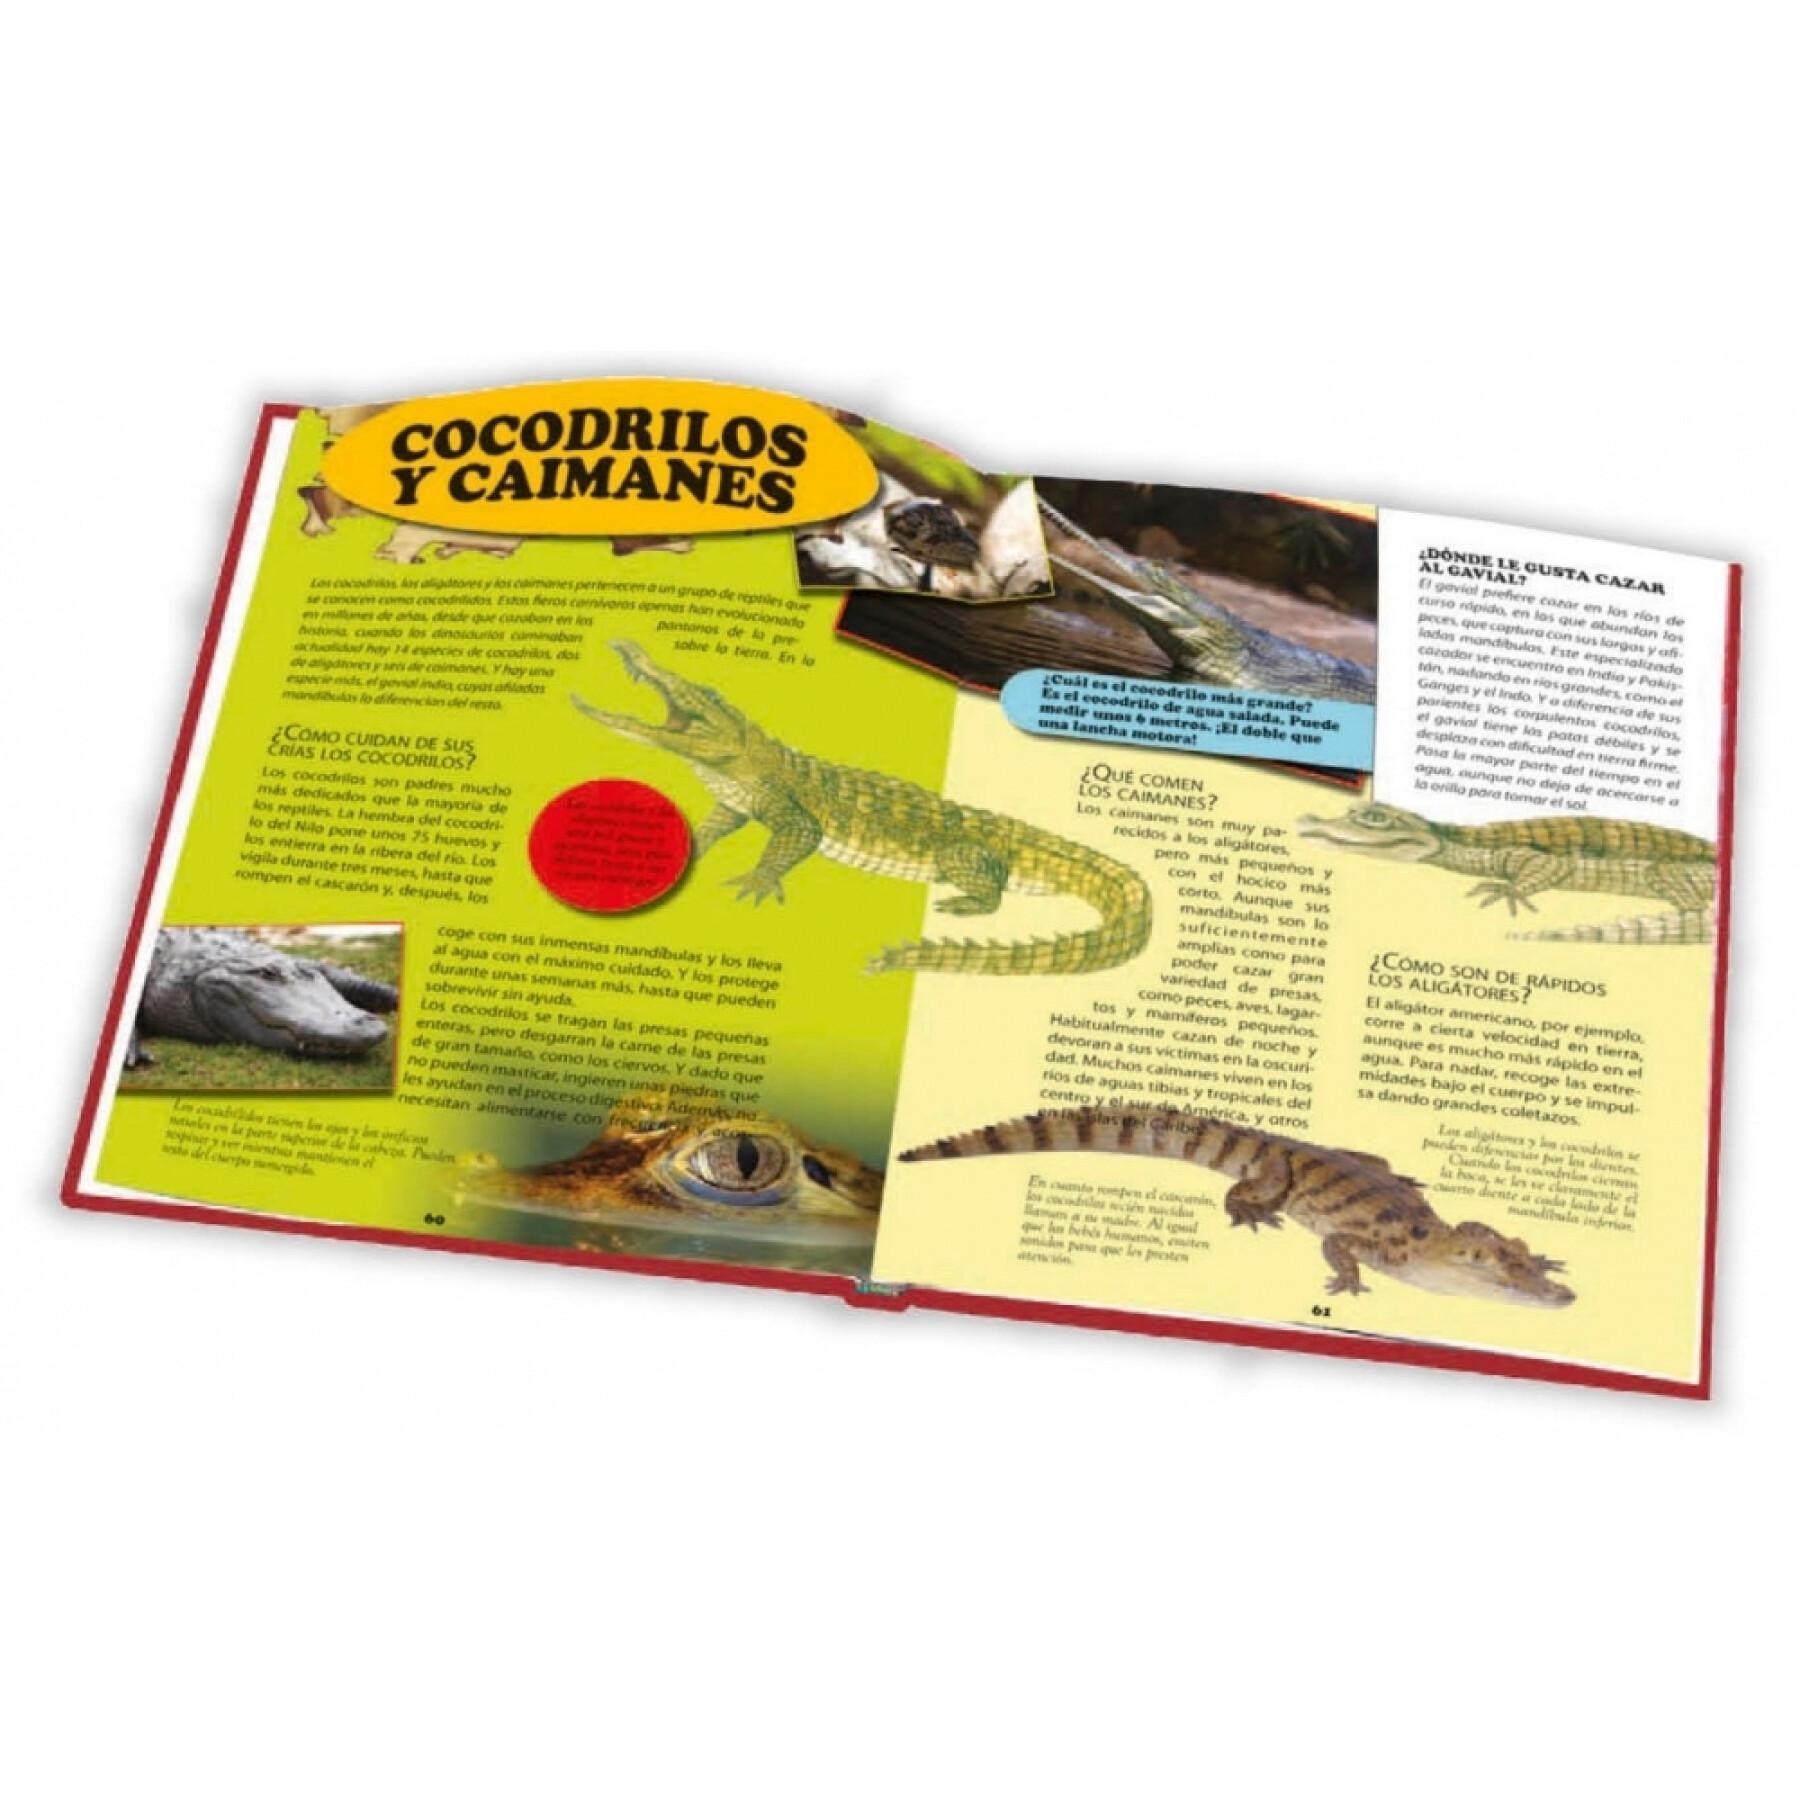 Libro enciclopedia de animales de 28 páginas Ediciones Saldaña